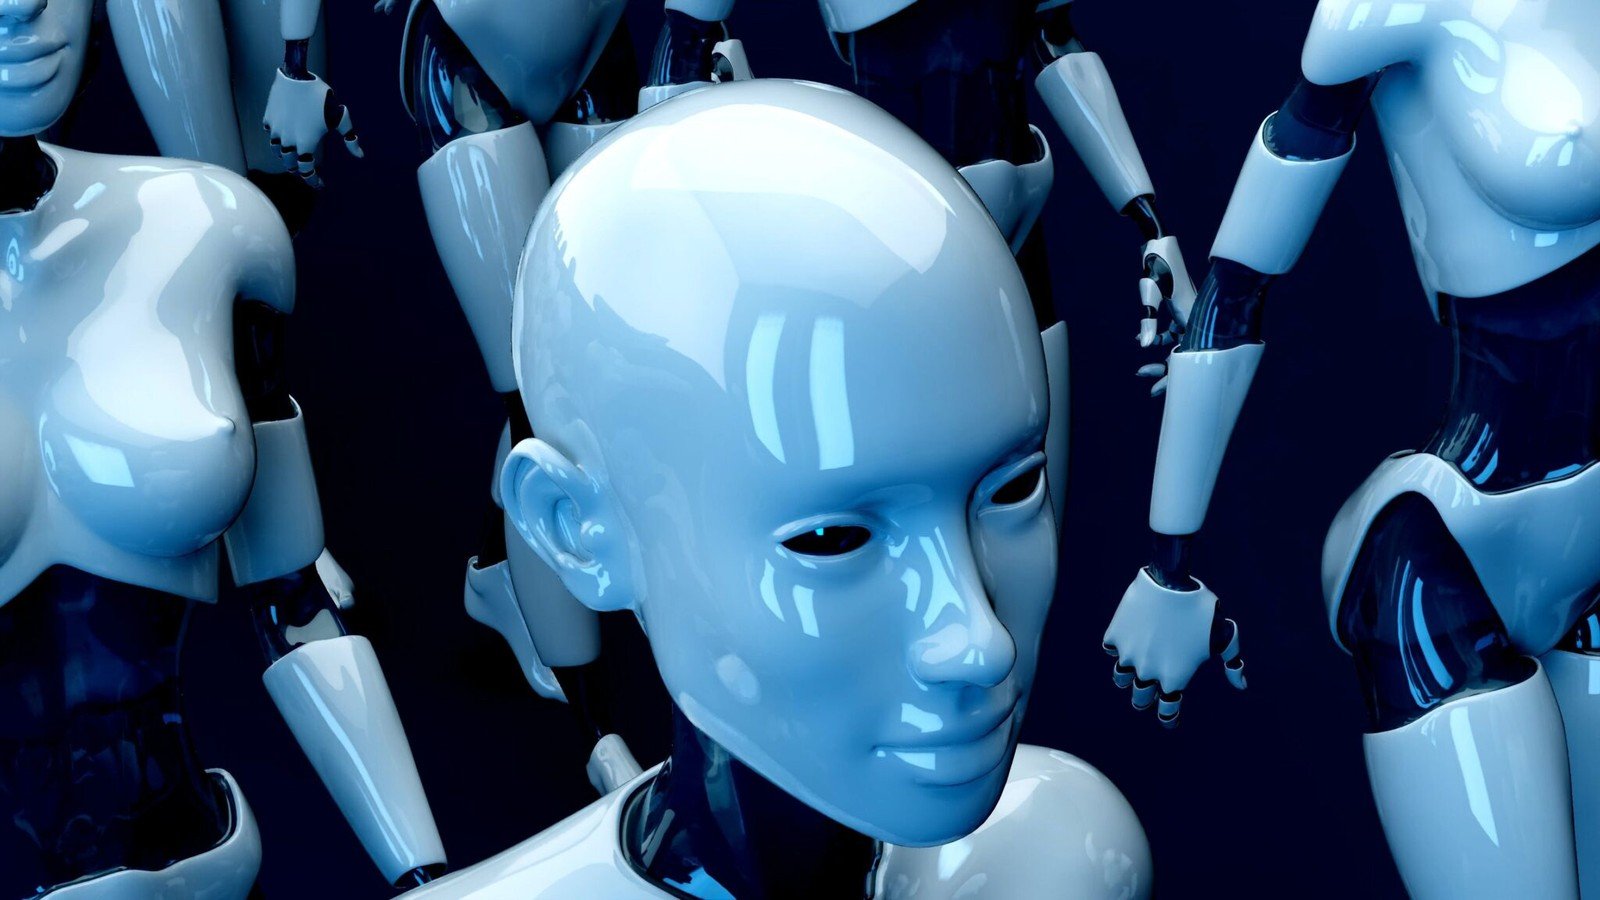 Sztuczna inteligencja najwyraźniej chce zgładzić ludzkość. Atomówki są dla niej niczym lekarstwo